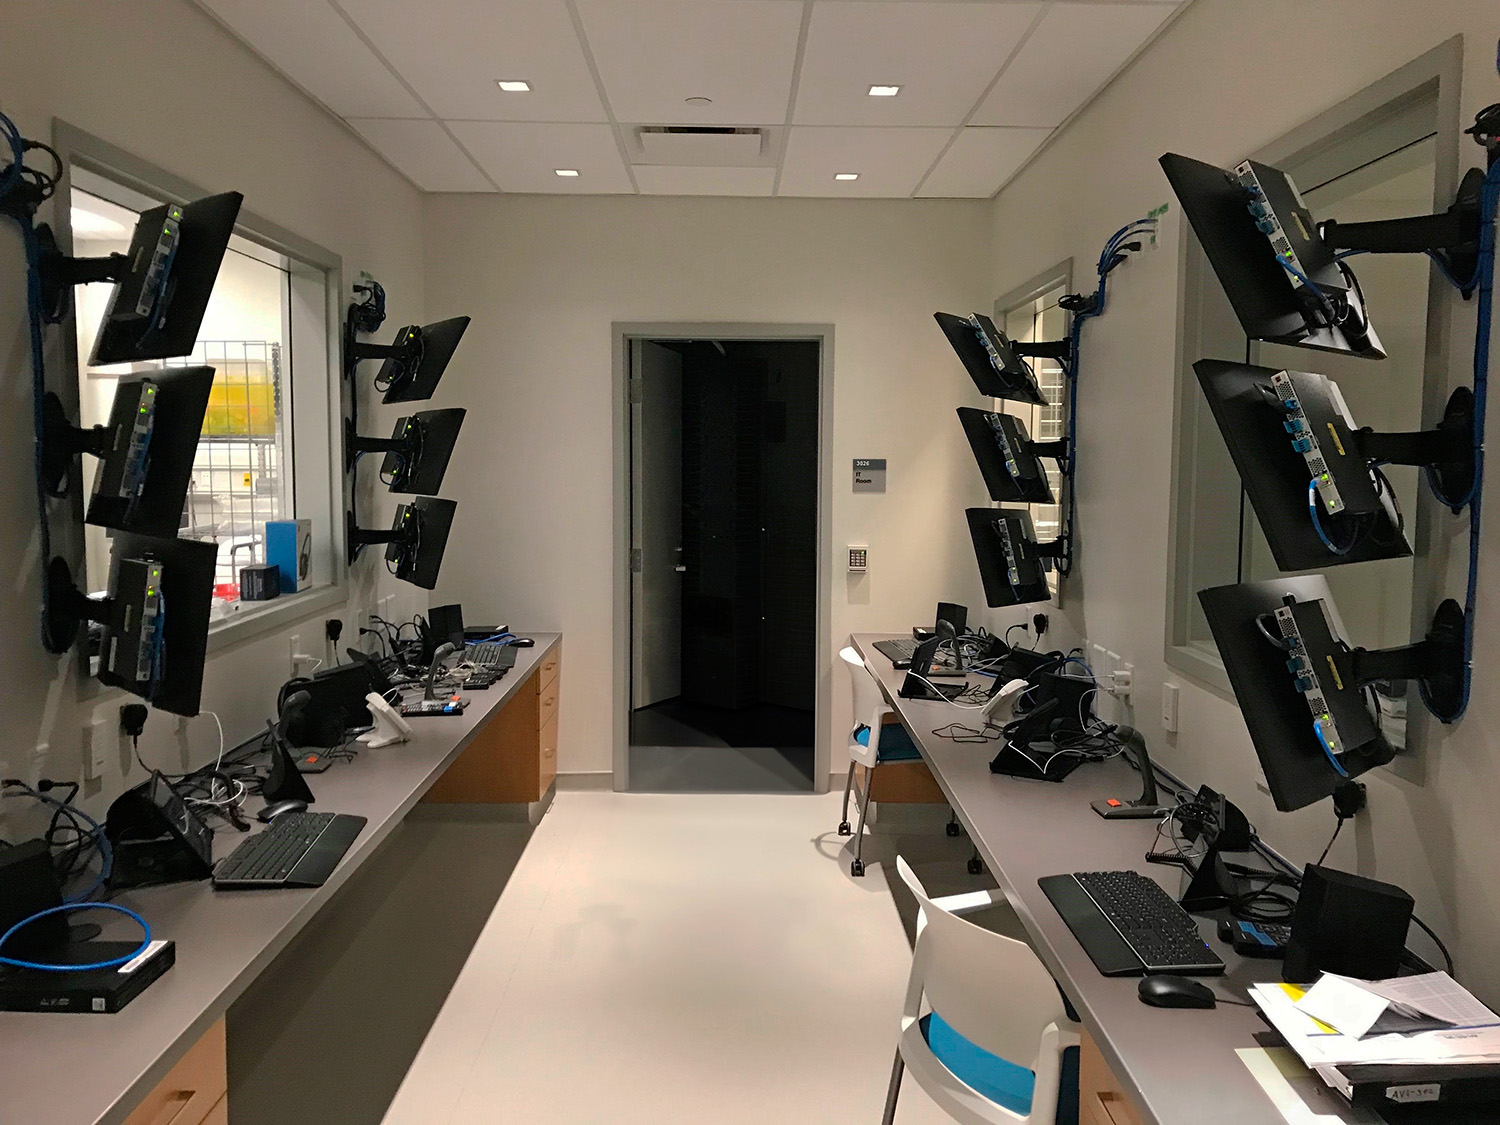 Algunas salas de control para laboratorios de fidelidad media proporcionan monitores en lugar de una ventana de observación. El operador del sistema y el colaborador del laboratorio se comunican con auriculares para estas simulaciones.